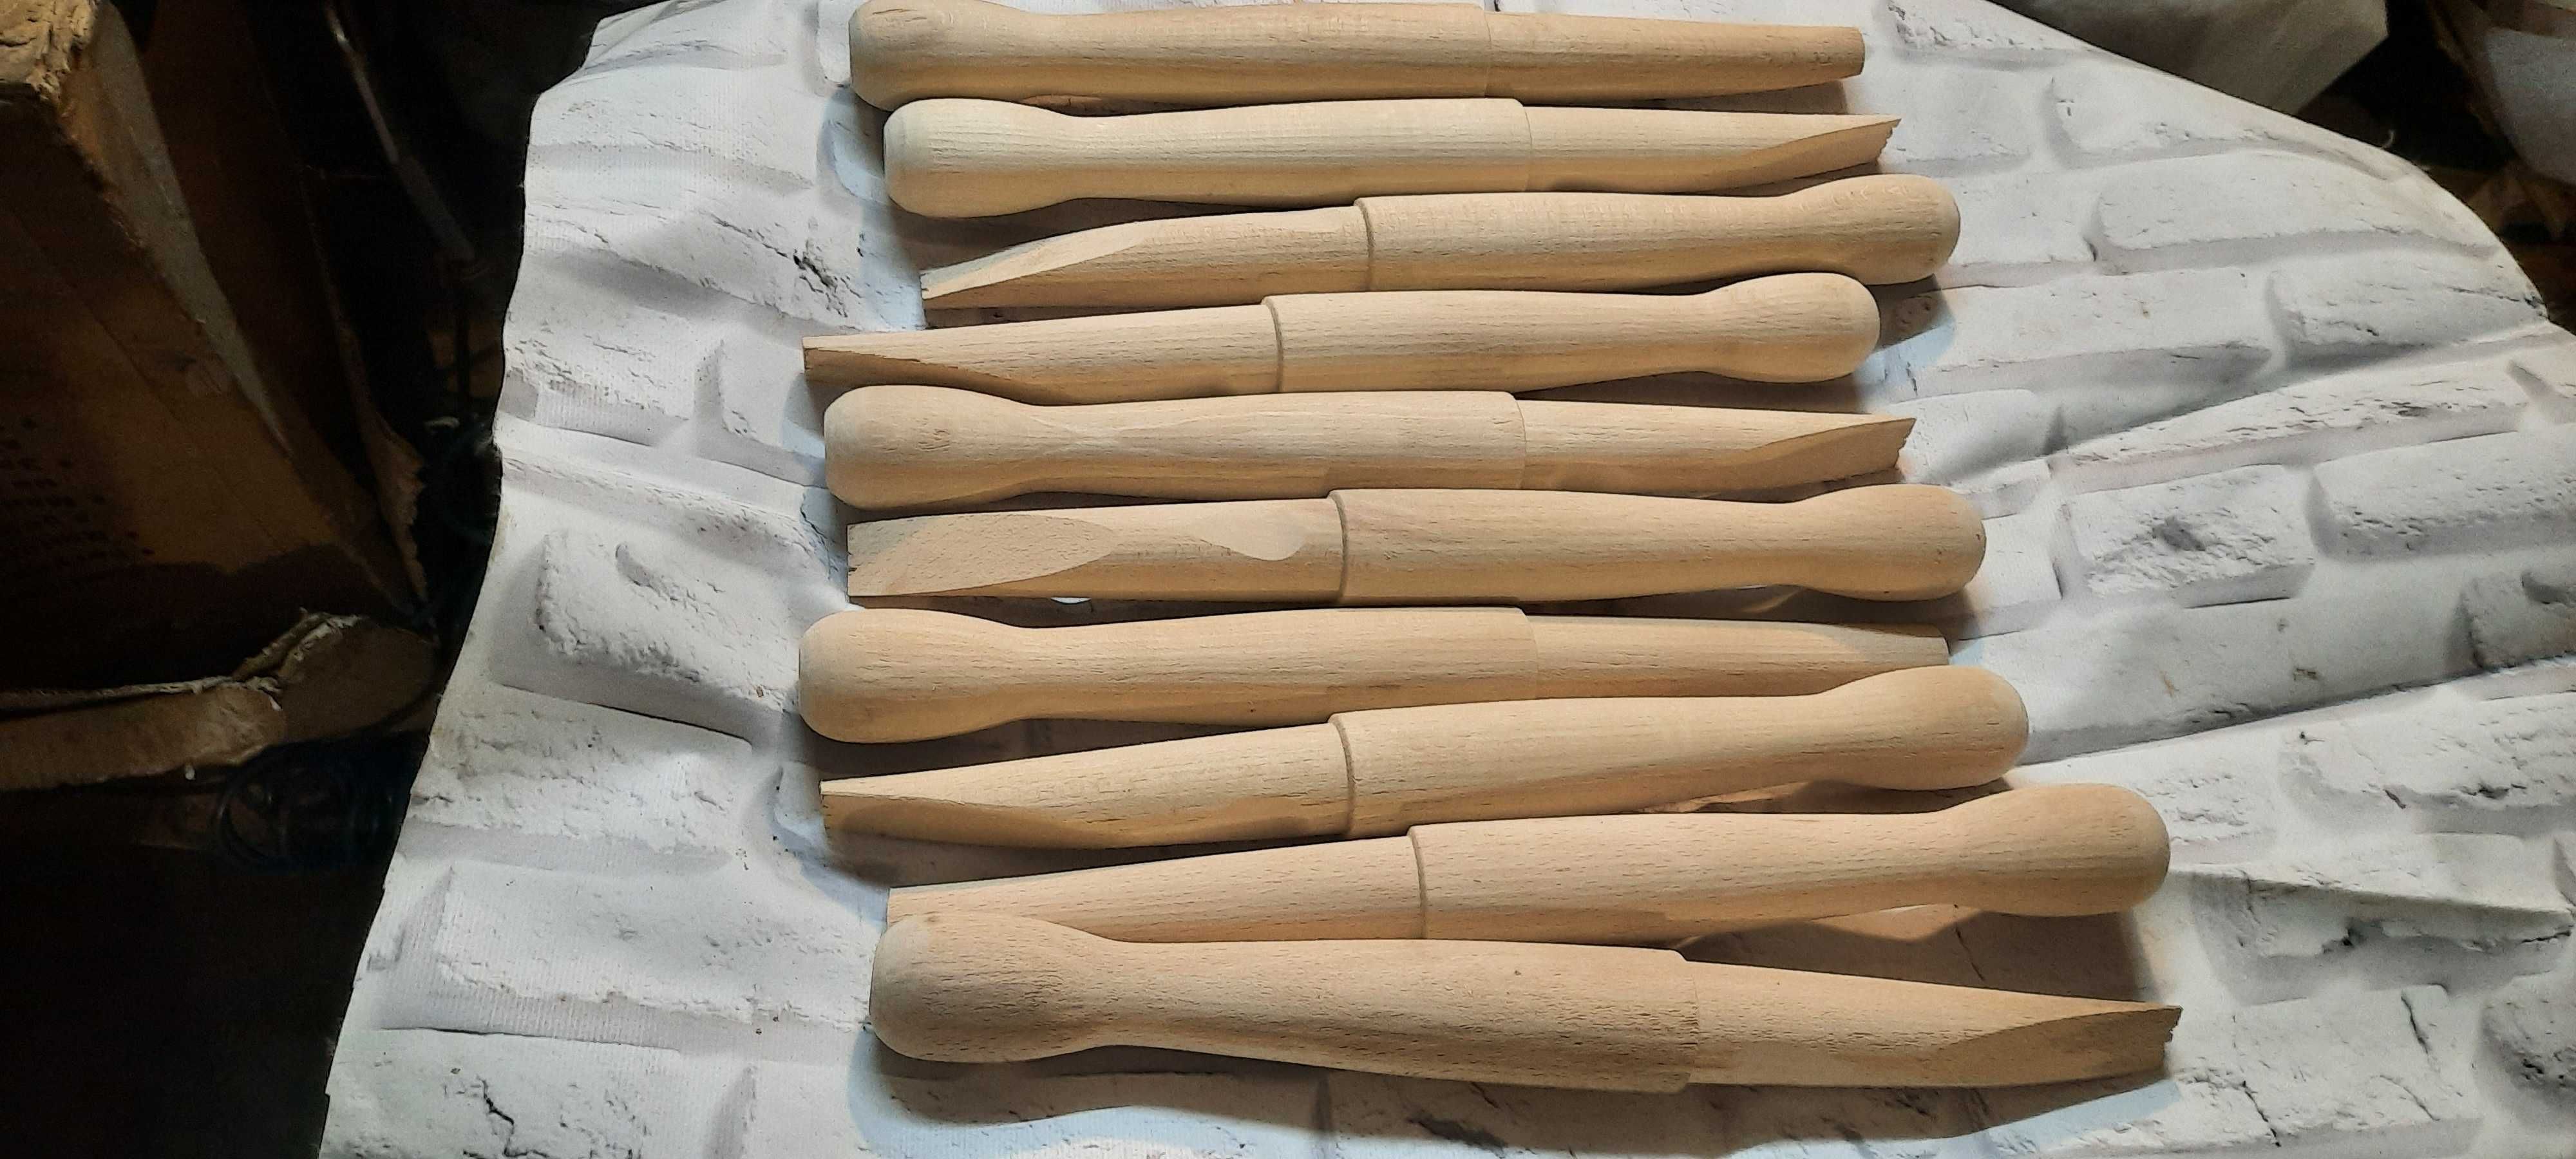 Ручка деревянная для напильника,молотка и других инструментов